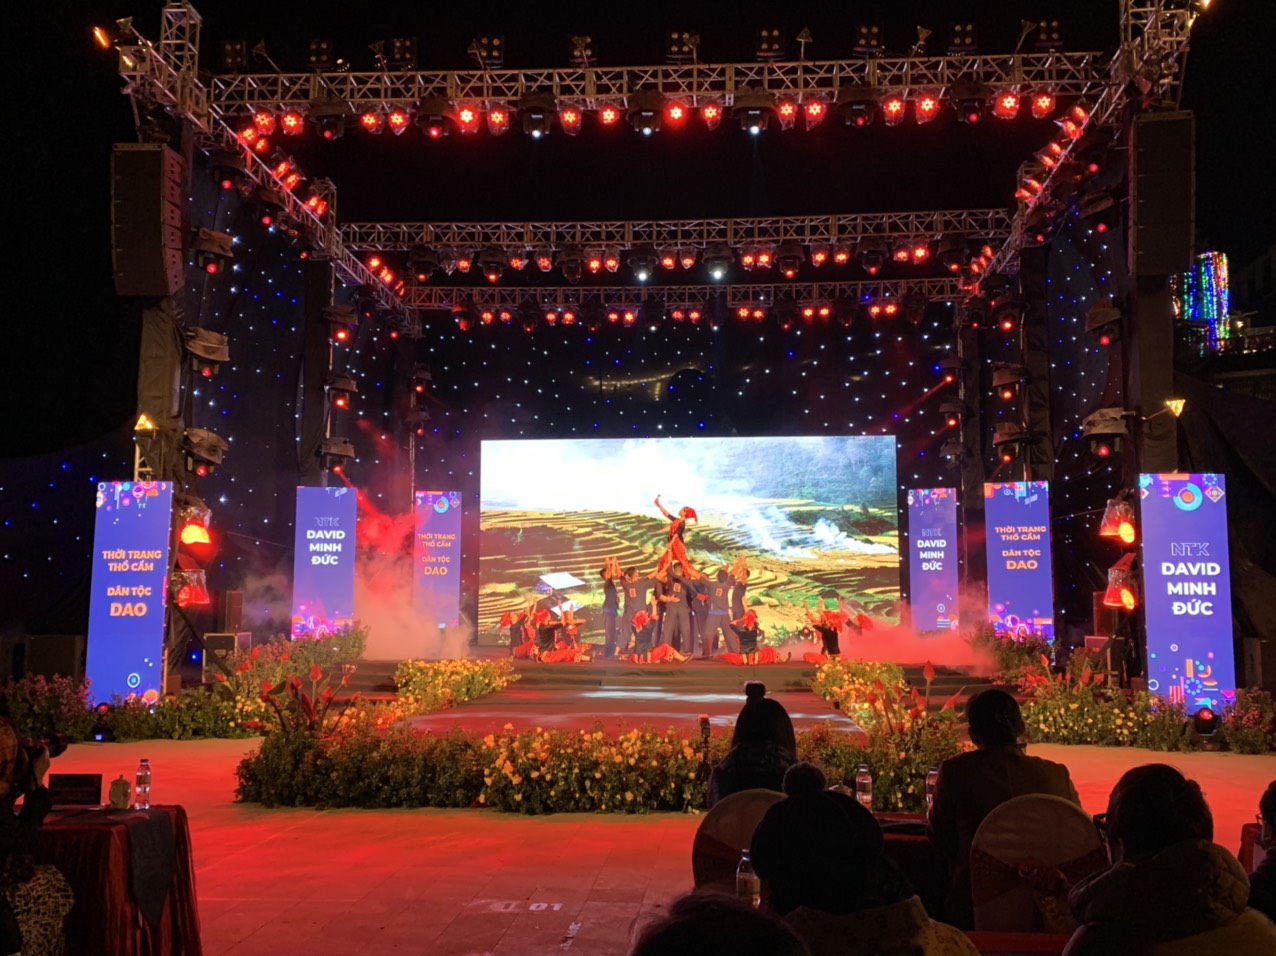 Festival tinh hoa Tây Bắc – Hương sắc Lào Cai năm 2021  được du khách đón nhận nồng nhiệt